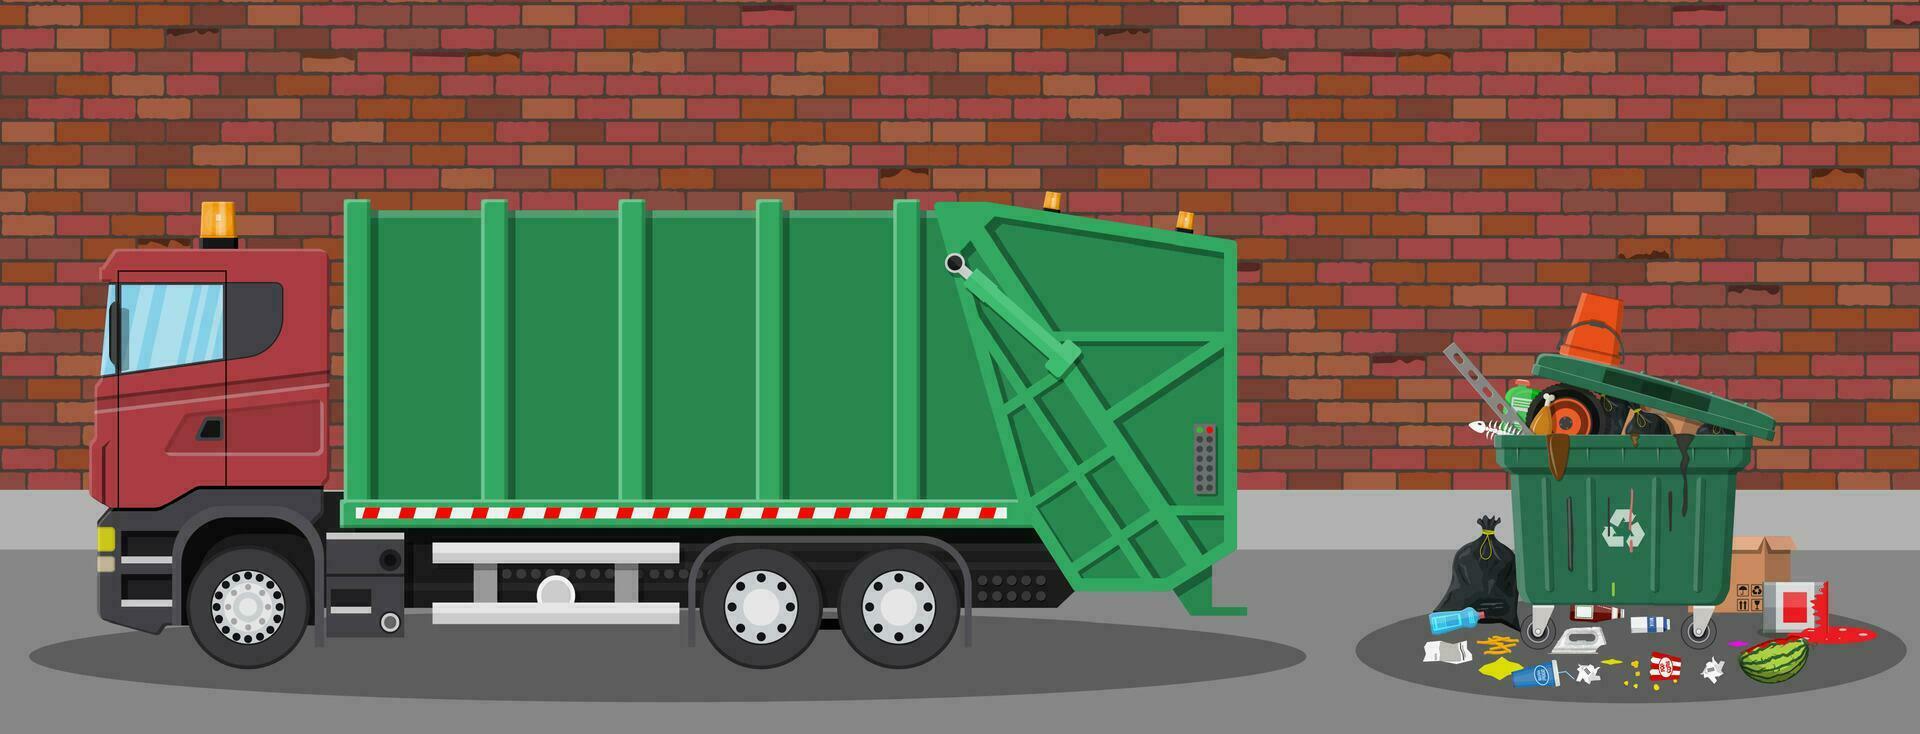 vrachtauto voor in elkaar zetten en vervoer afval. auto verspilling beschikbaarheid. kan container, zak en emmer voor afval. recycling en gebruik apparatuur. straat. vector illustratie in vlak stijl